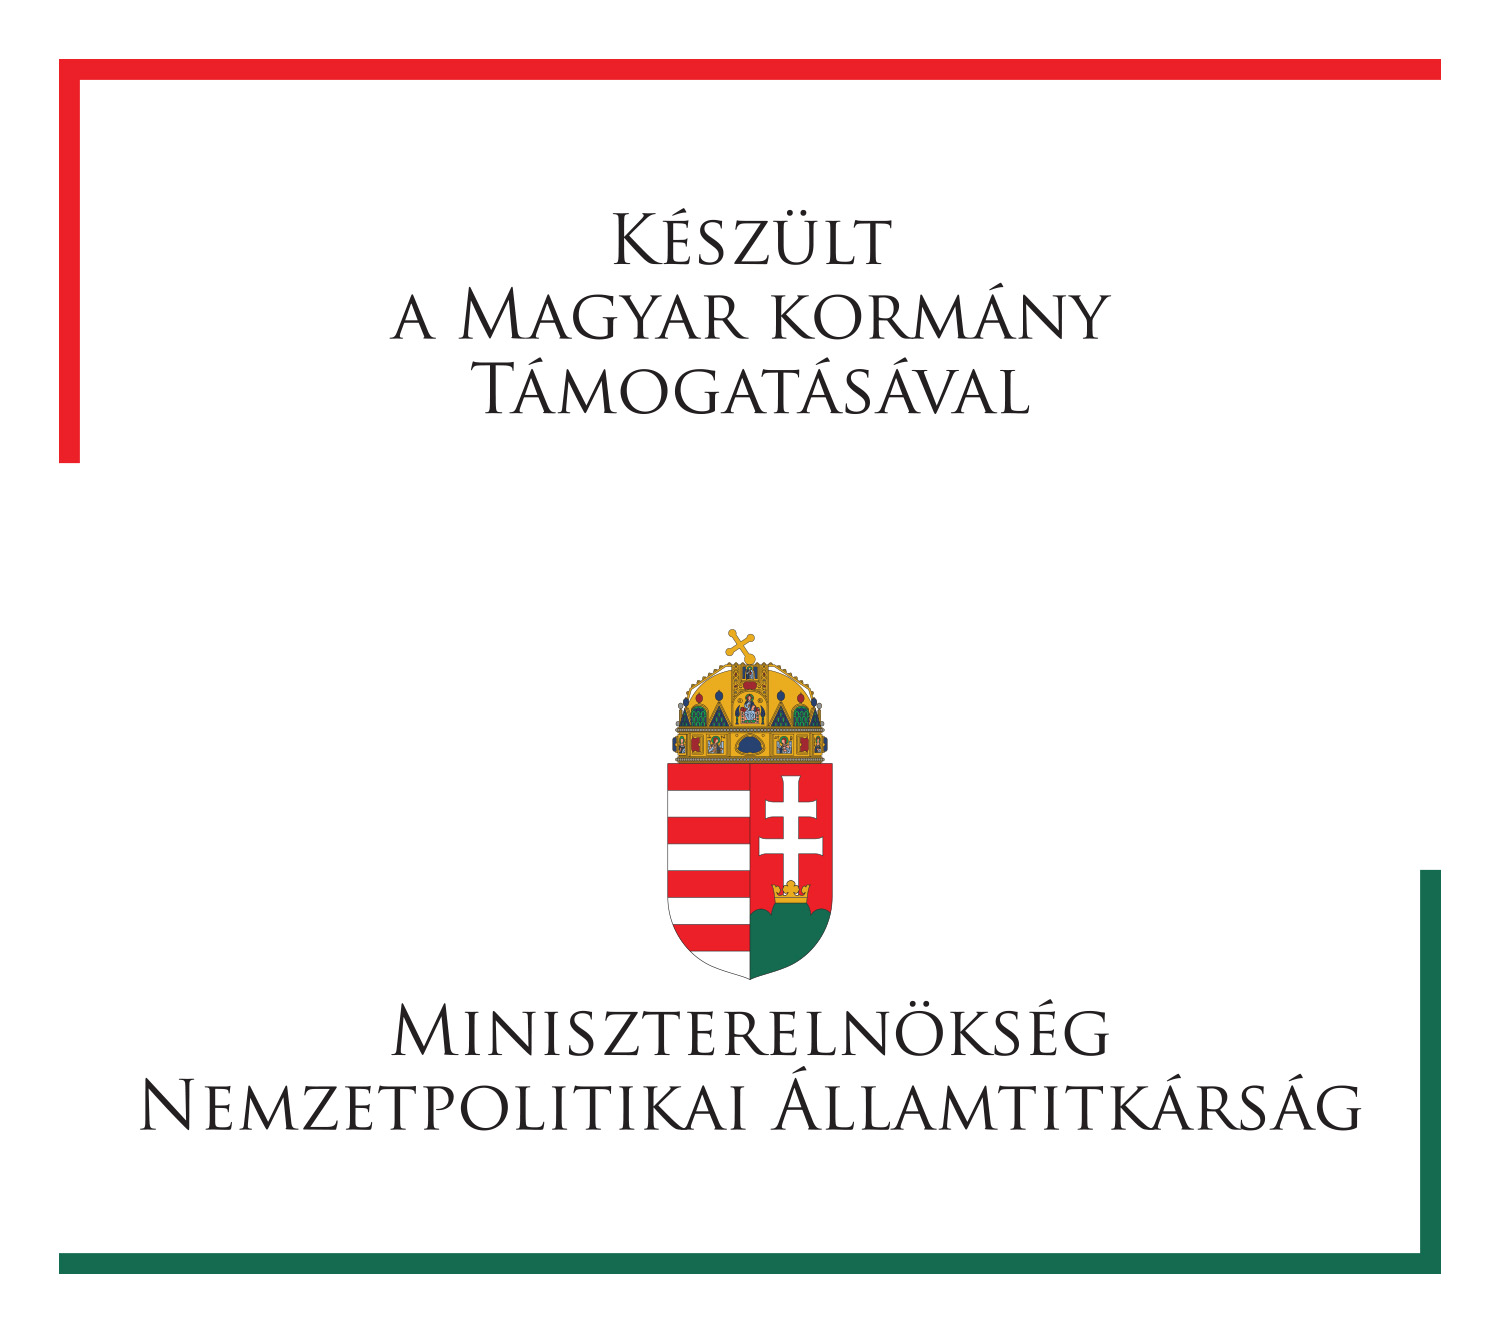 Készült a Magyar Kormány Támogatásával, Miniszterelnökség Nemzetpolitikai Államtitkárság logó